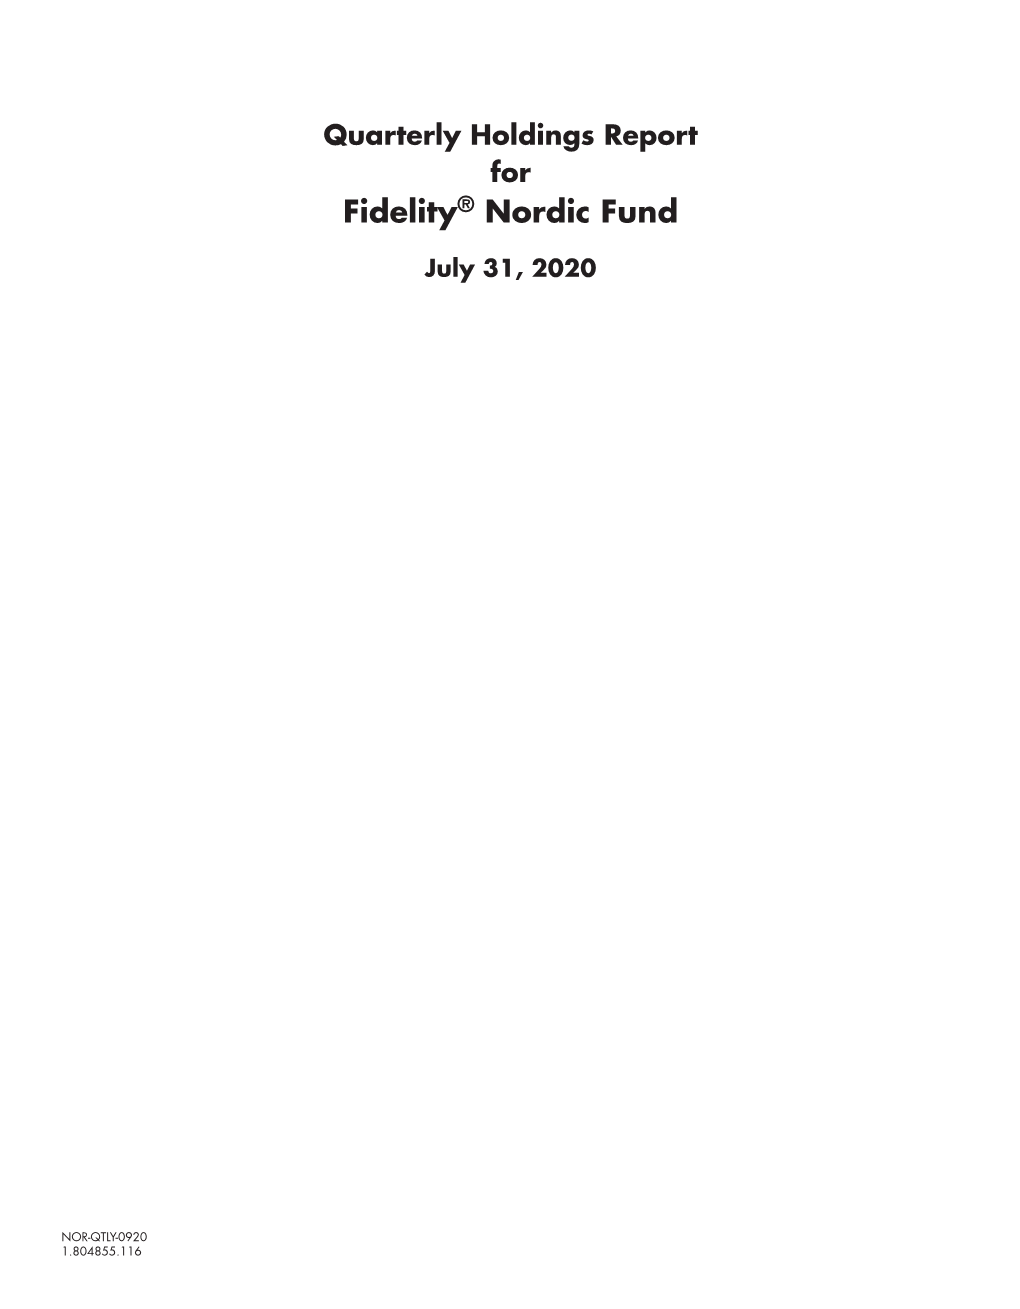 Fidelity® Nordic Fund